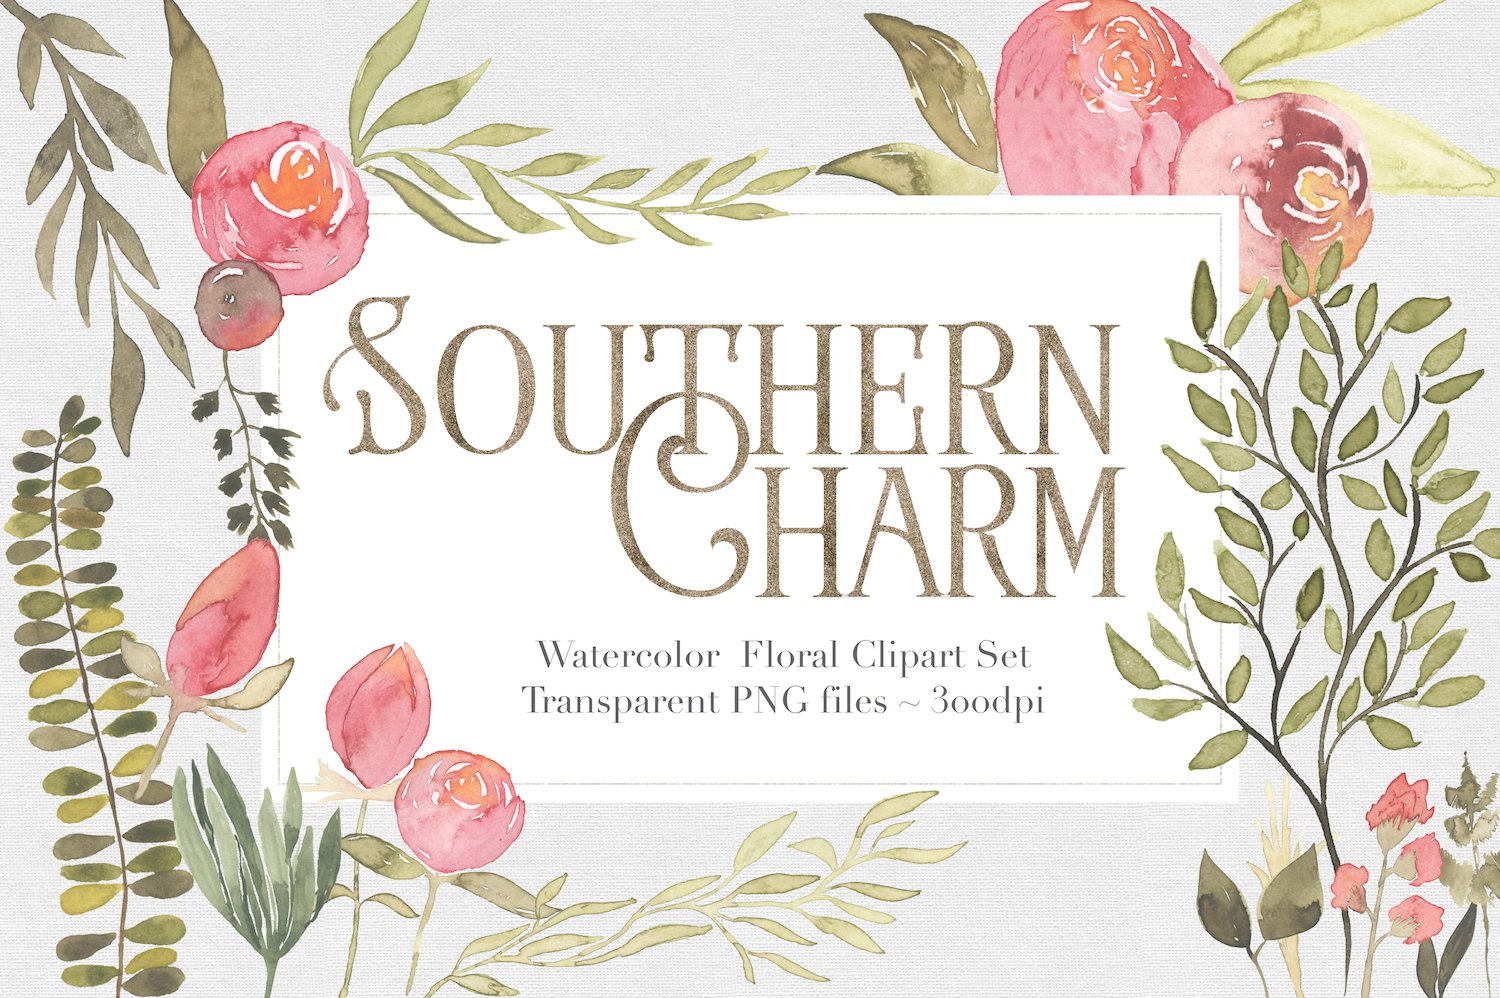 迷人的南方花卉剪贴画集 Southern Charm Flo